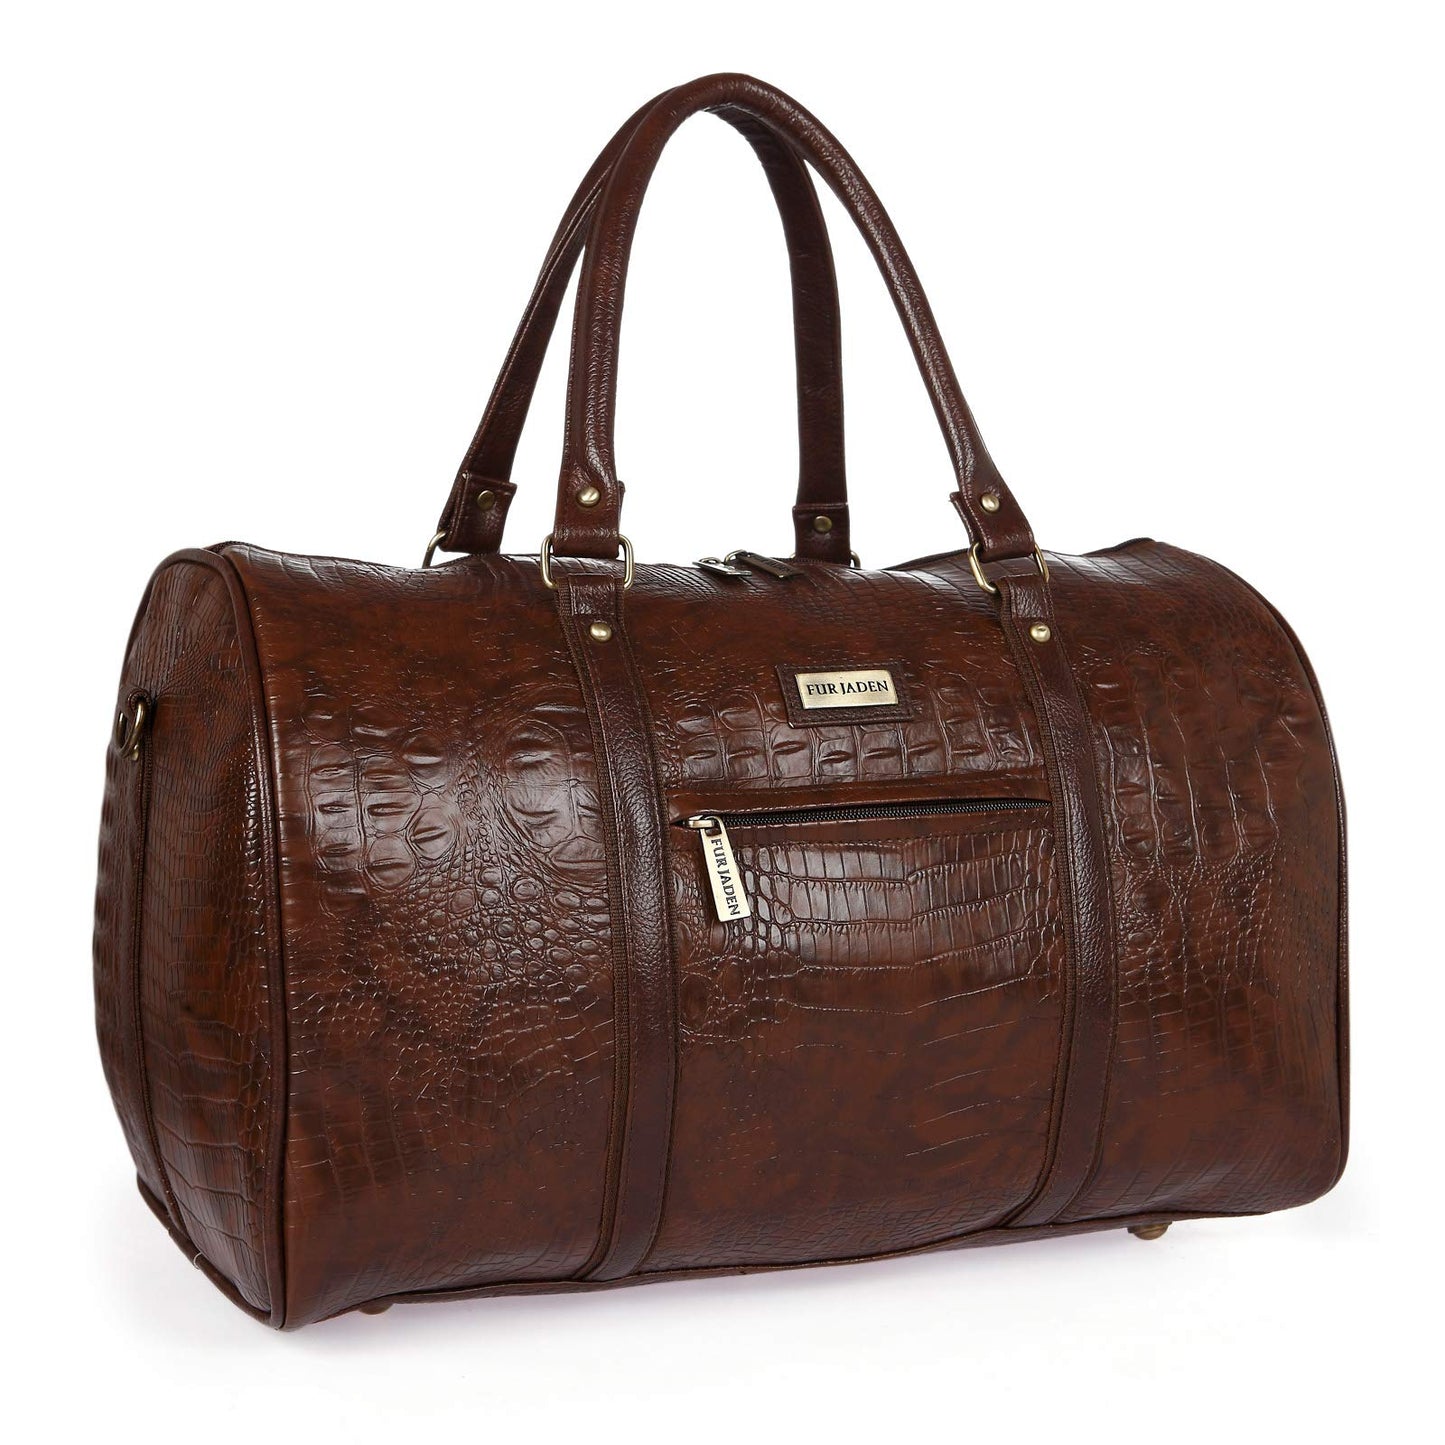 Fur Jaden Leatherette Weekender Duffle Bag, Brown, M, Luggage